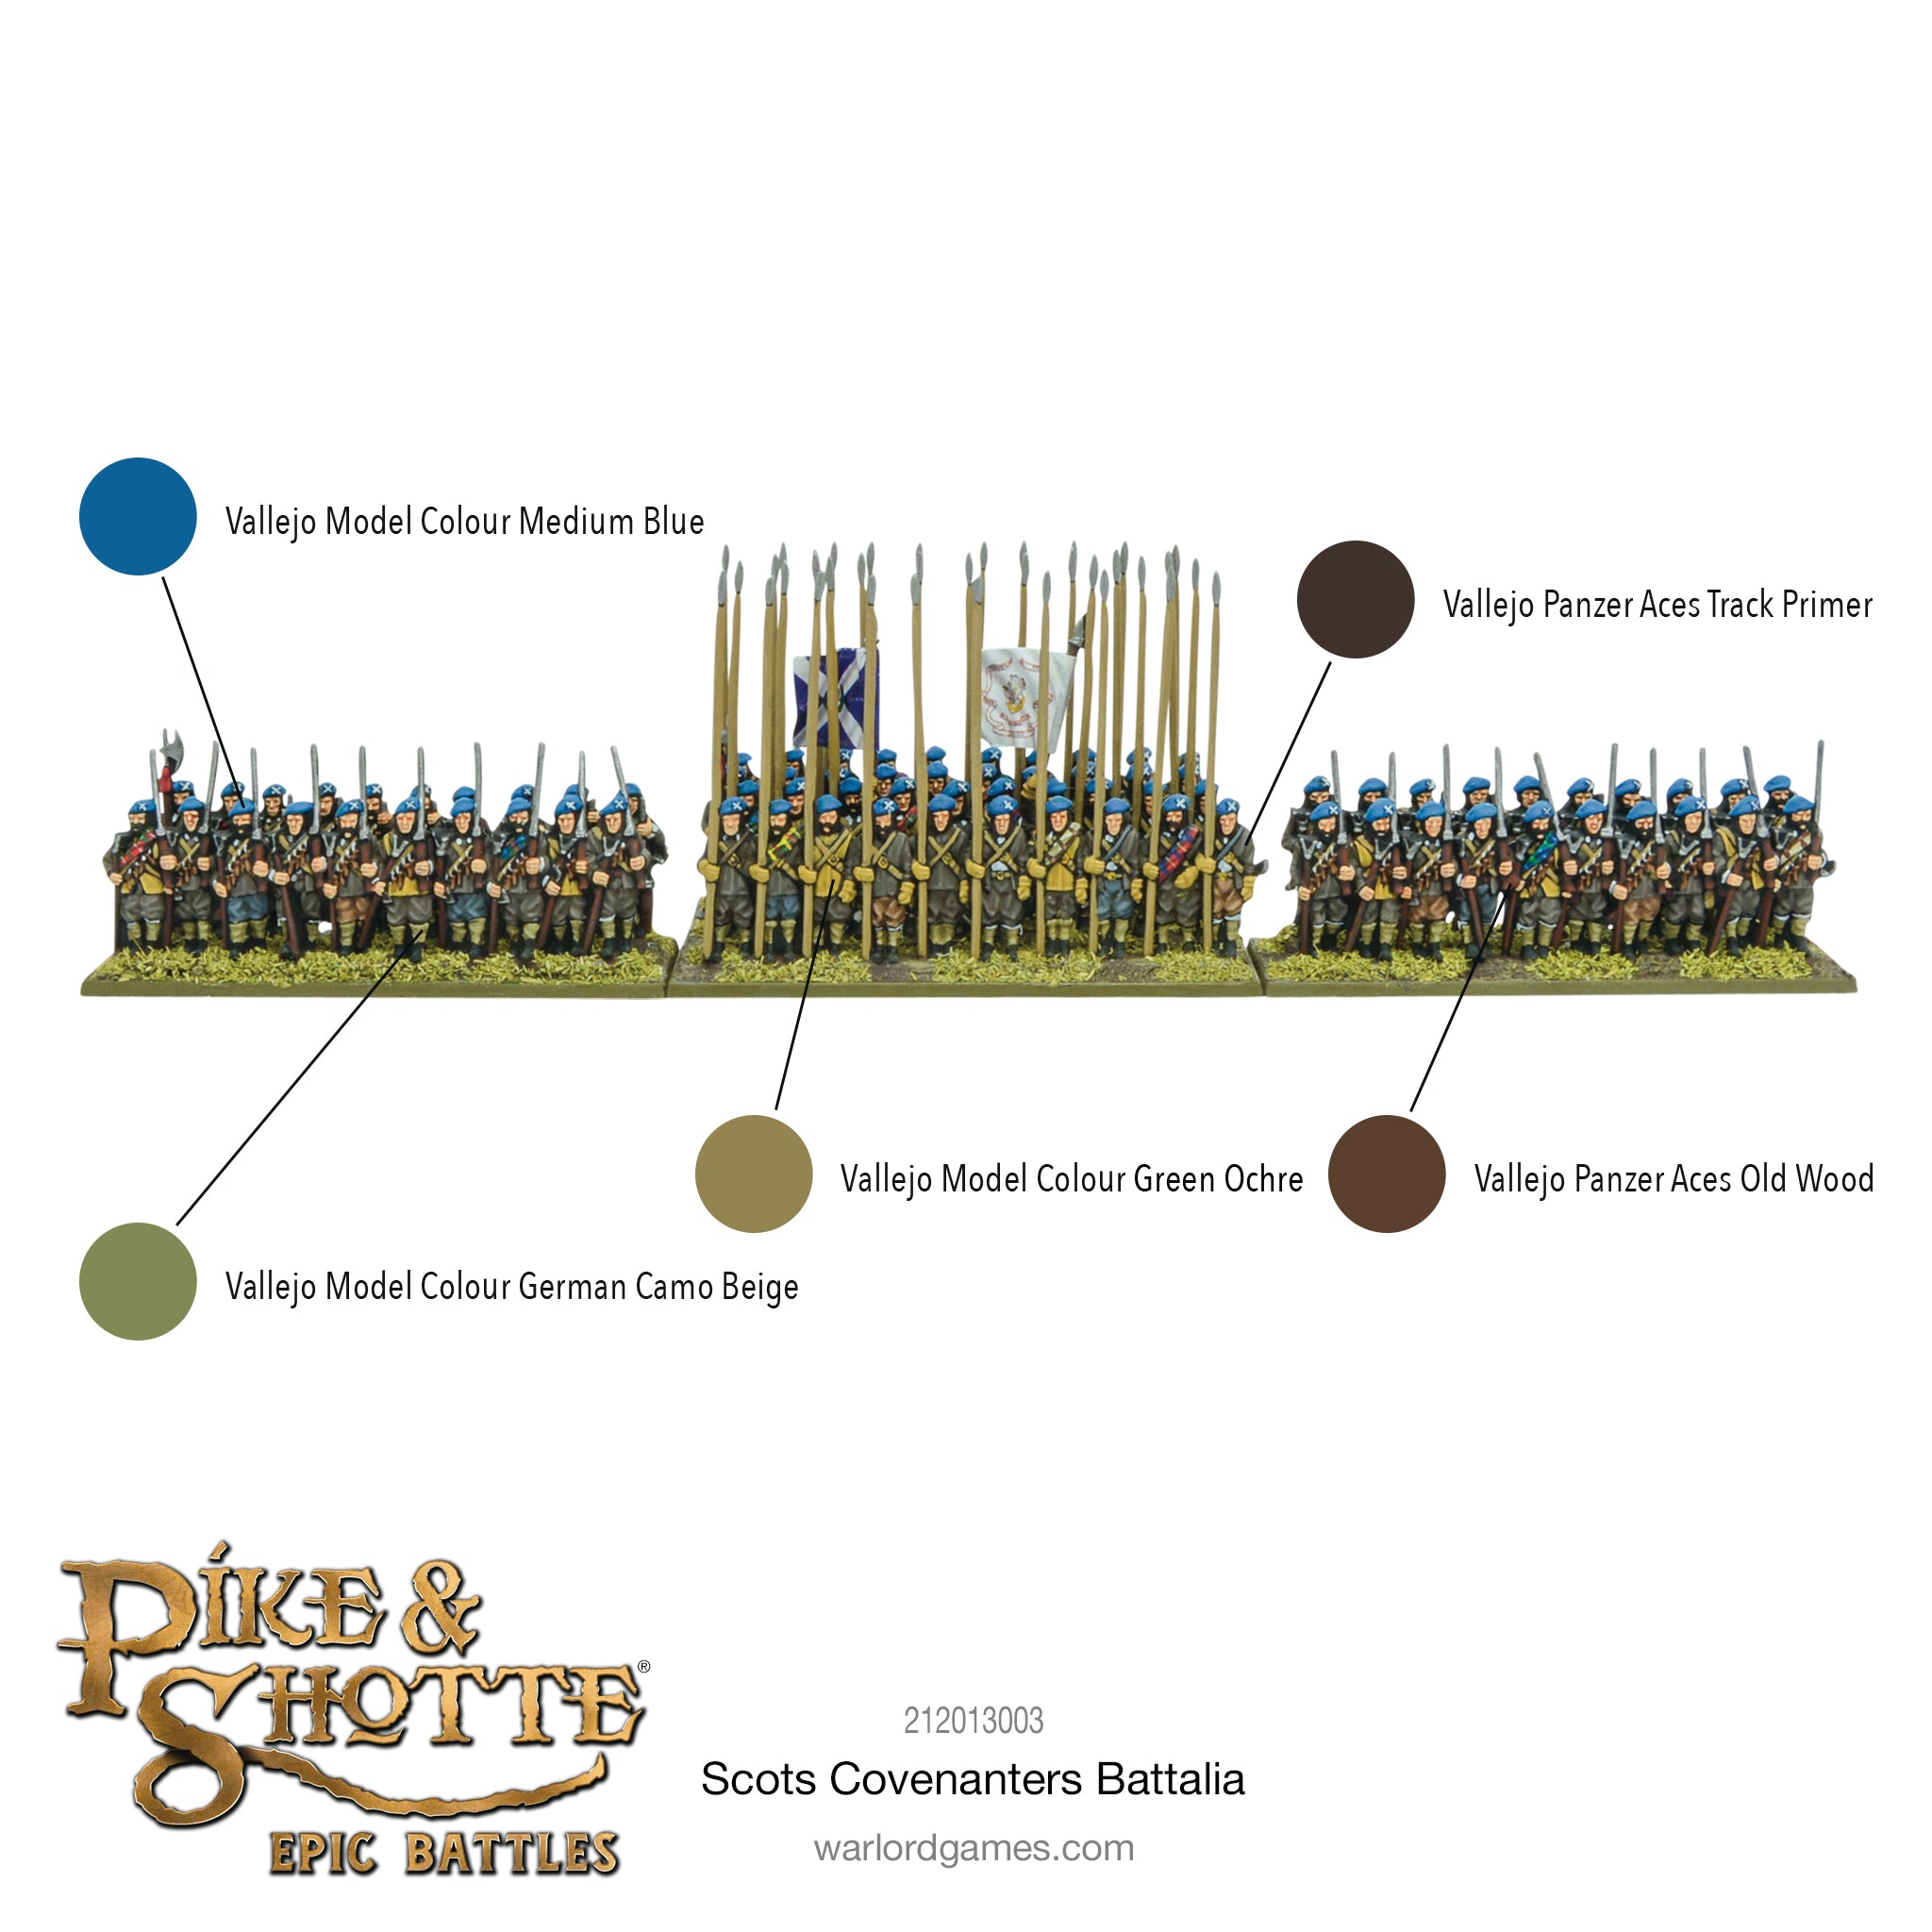 Pike & Shotte Epic Battles: Scots Covenanters Battalia